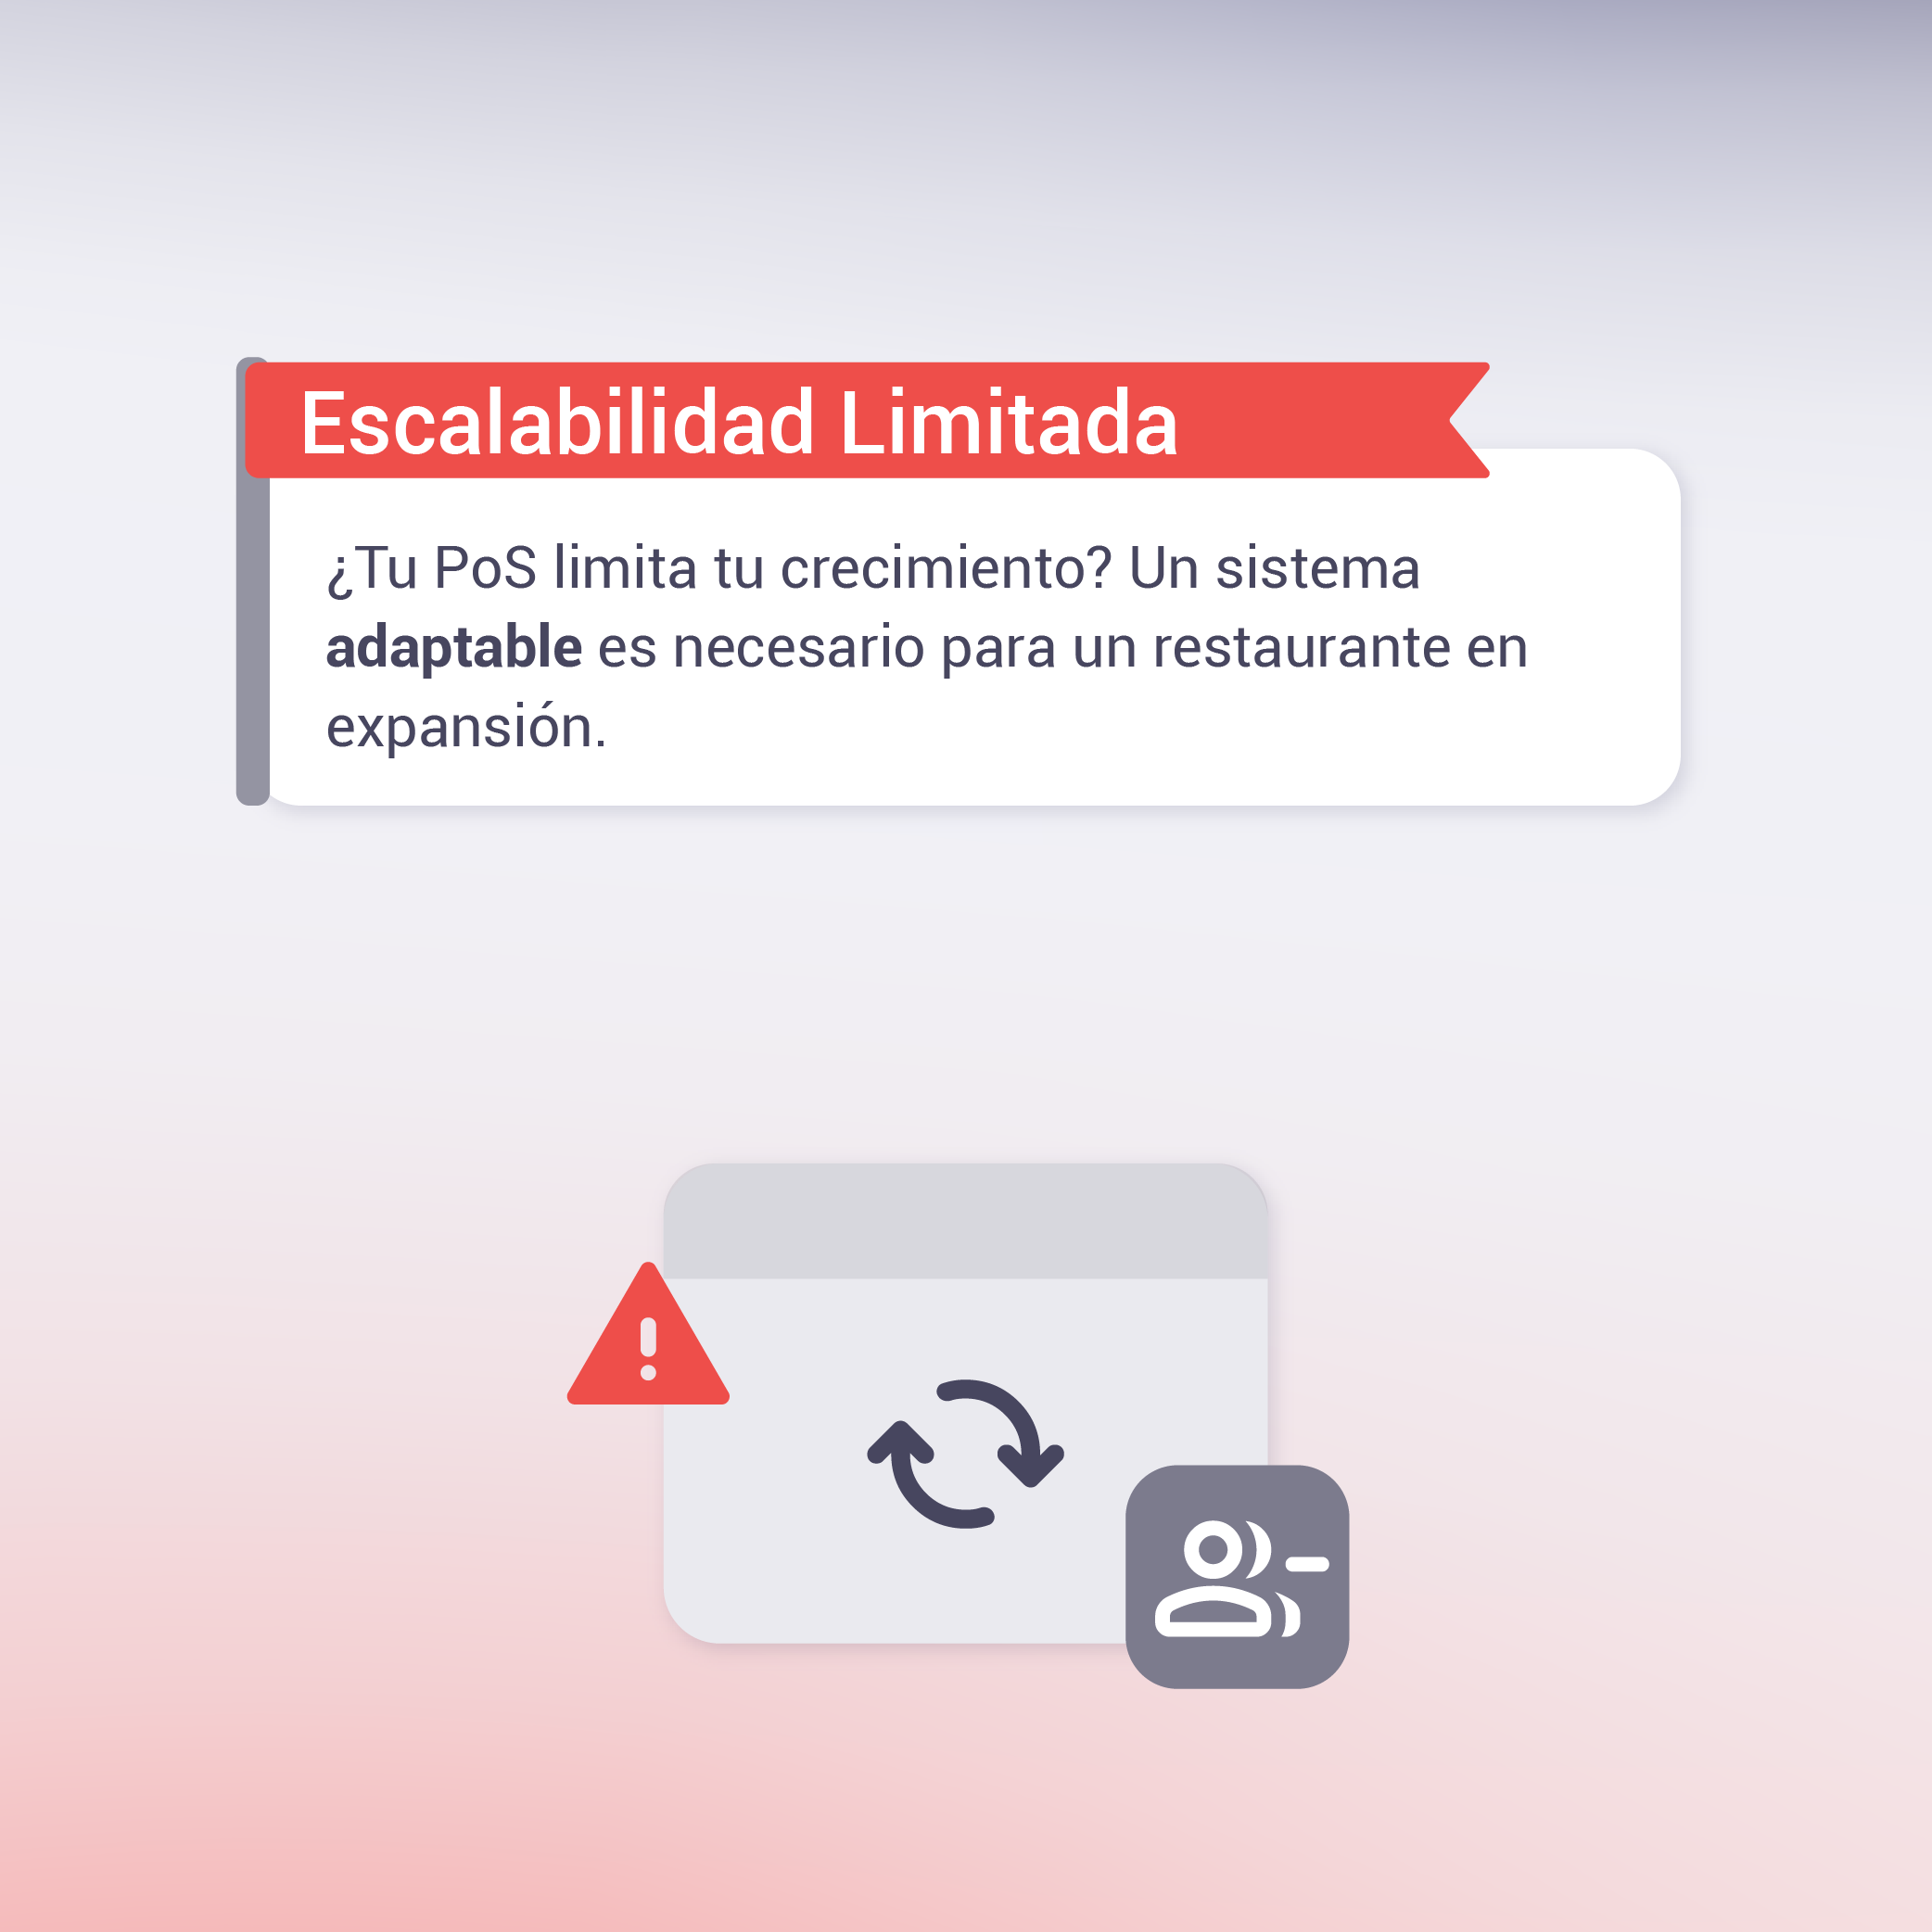 Icono de advertencia sobre limitada escalabilidad en POS para restaurantes, con símbolos de actualización y usuario.